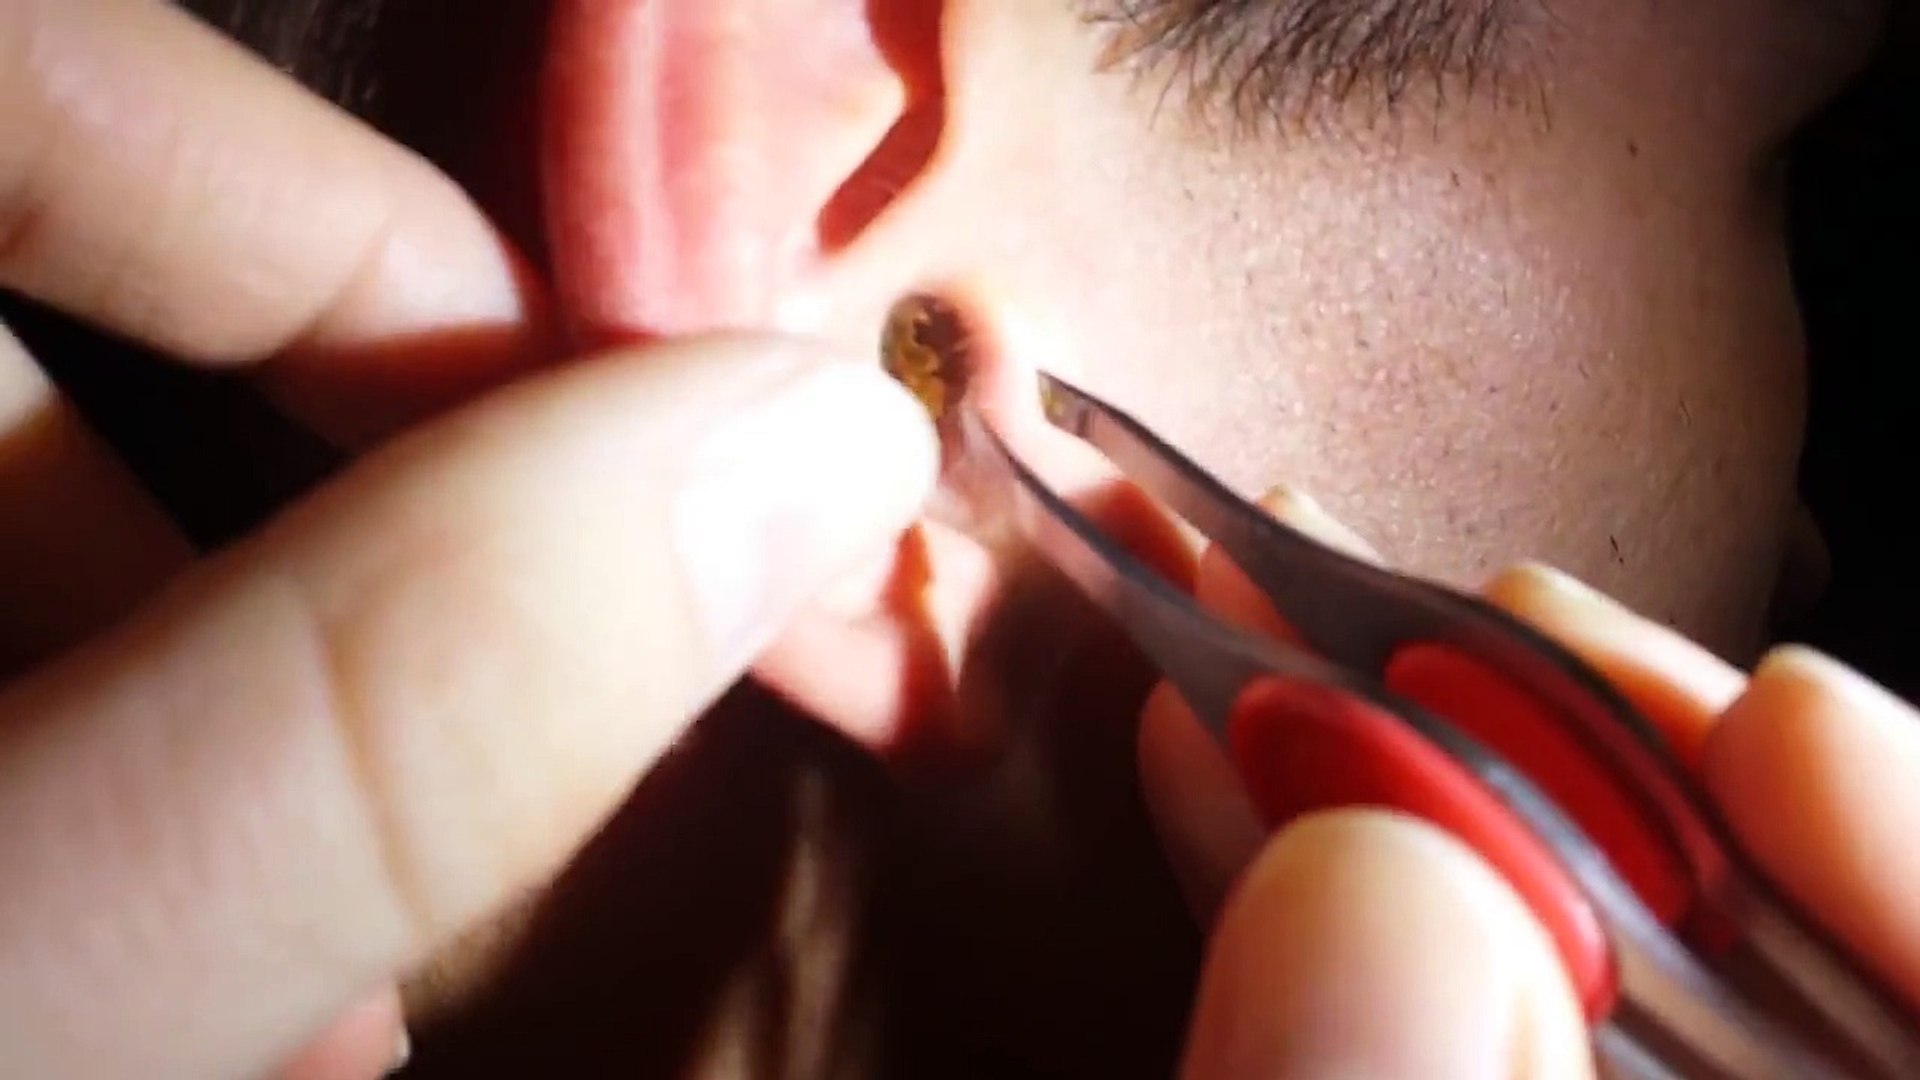 Bouchon de cérumen dans l'oreille : comment l'éliminer